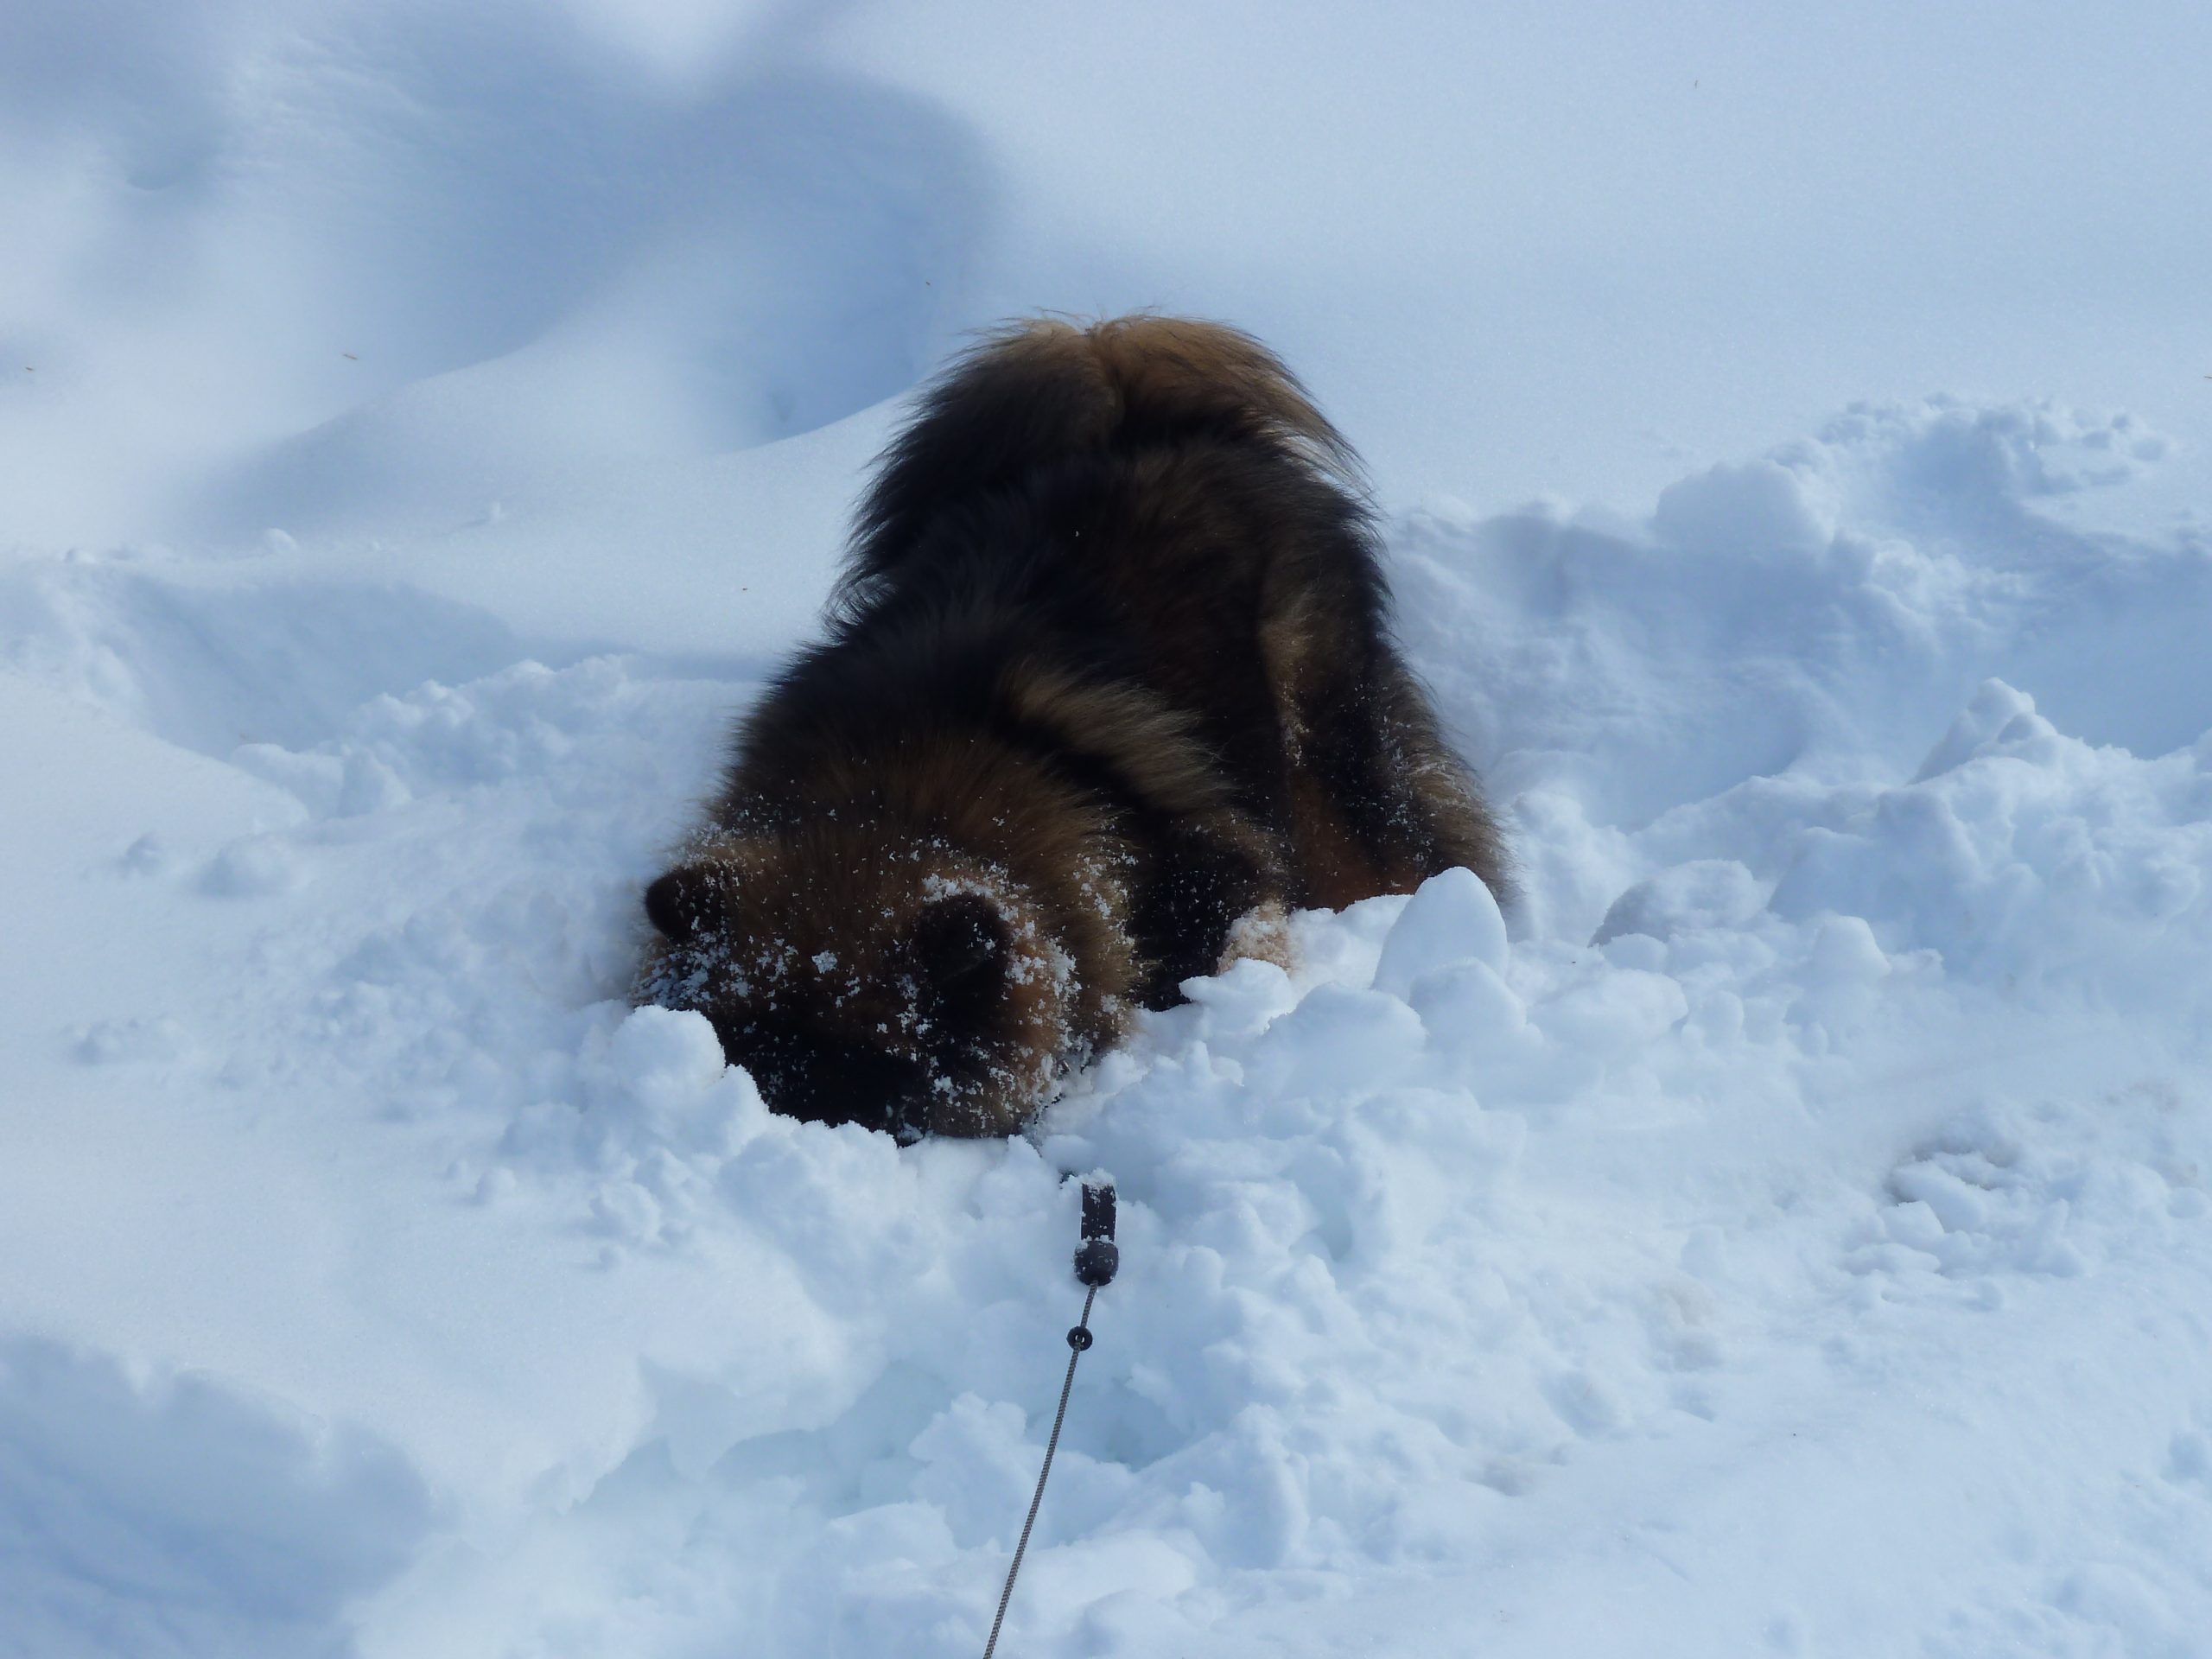 Hund sucht im Schnee